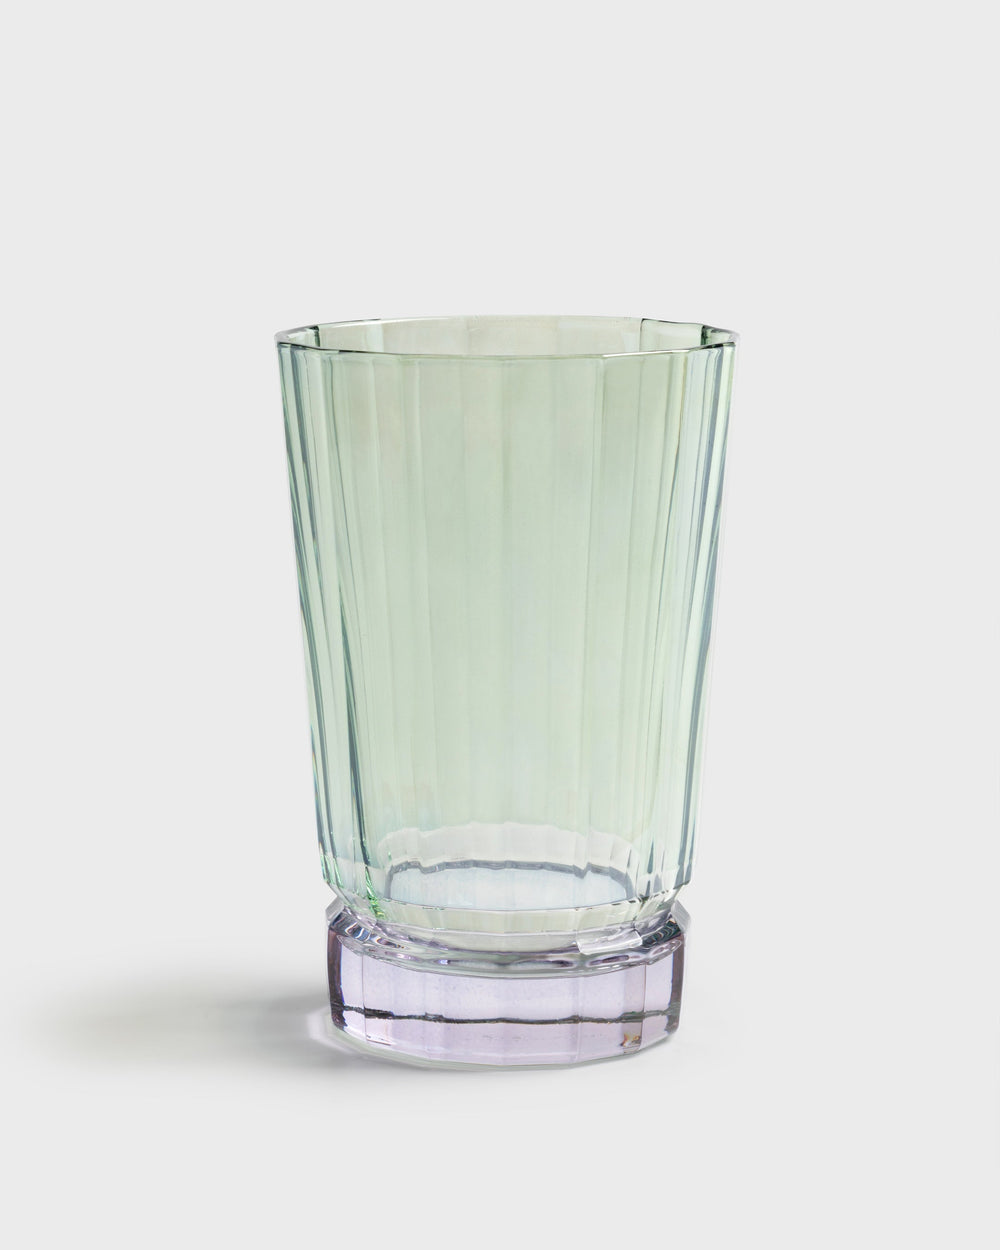 Tania Bulhoes Long Glass Verona Green & Purpura